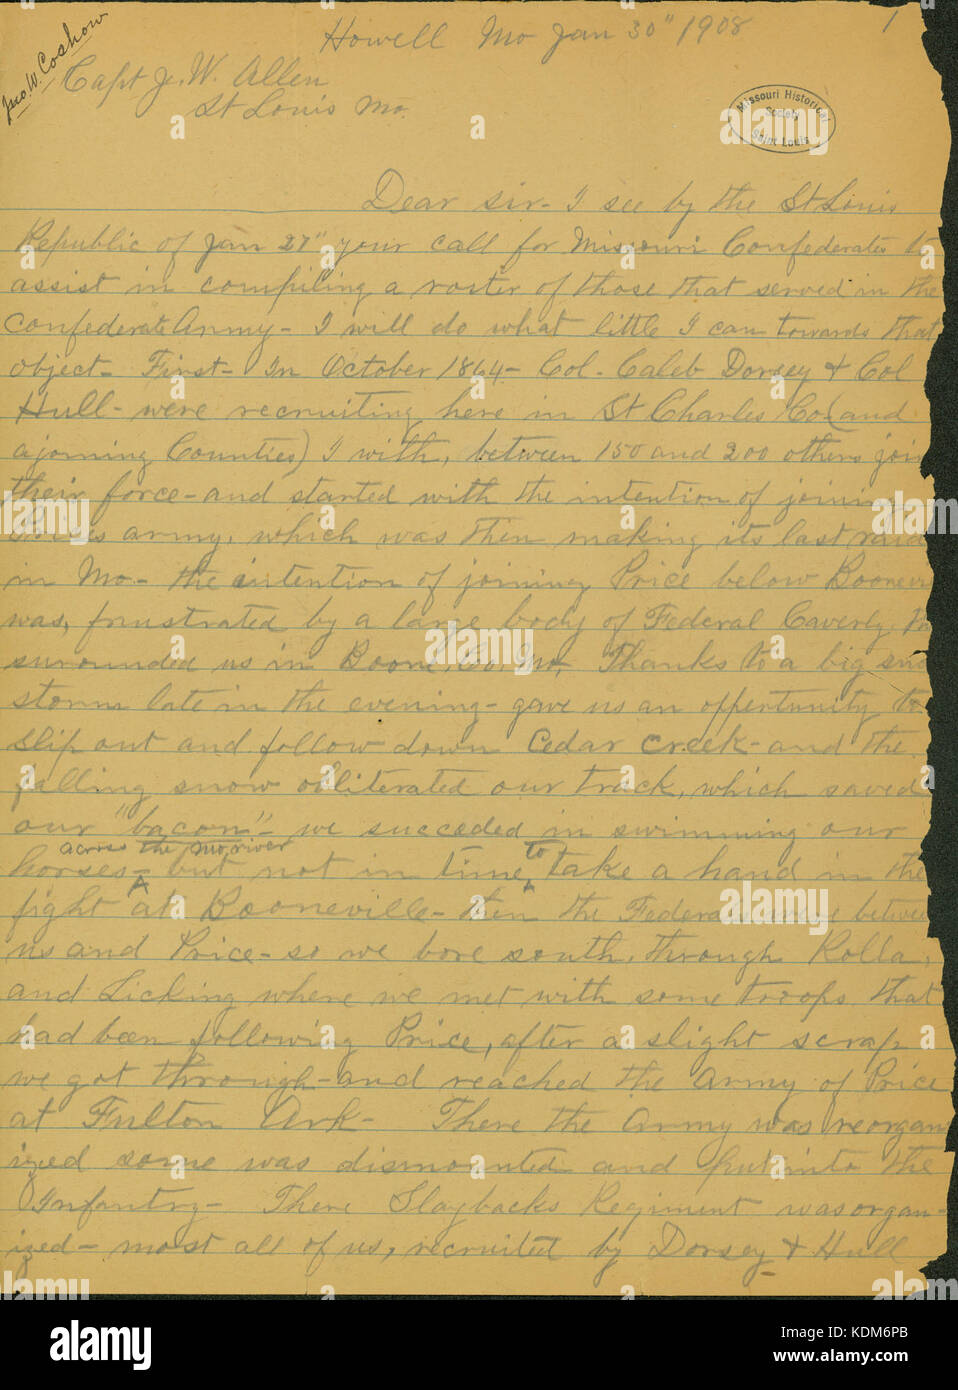 Lettre signée John W. Coshow, Howell, Missouri, dans J.W. (James Allen W. Allen), Saint Louis, le 30 janvier, 1908 Banque D'Images